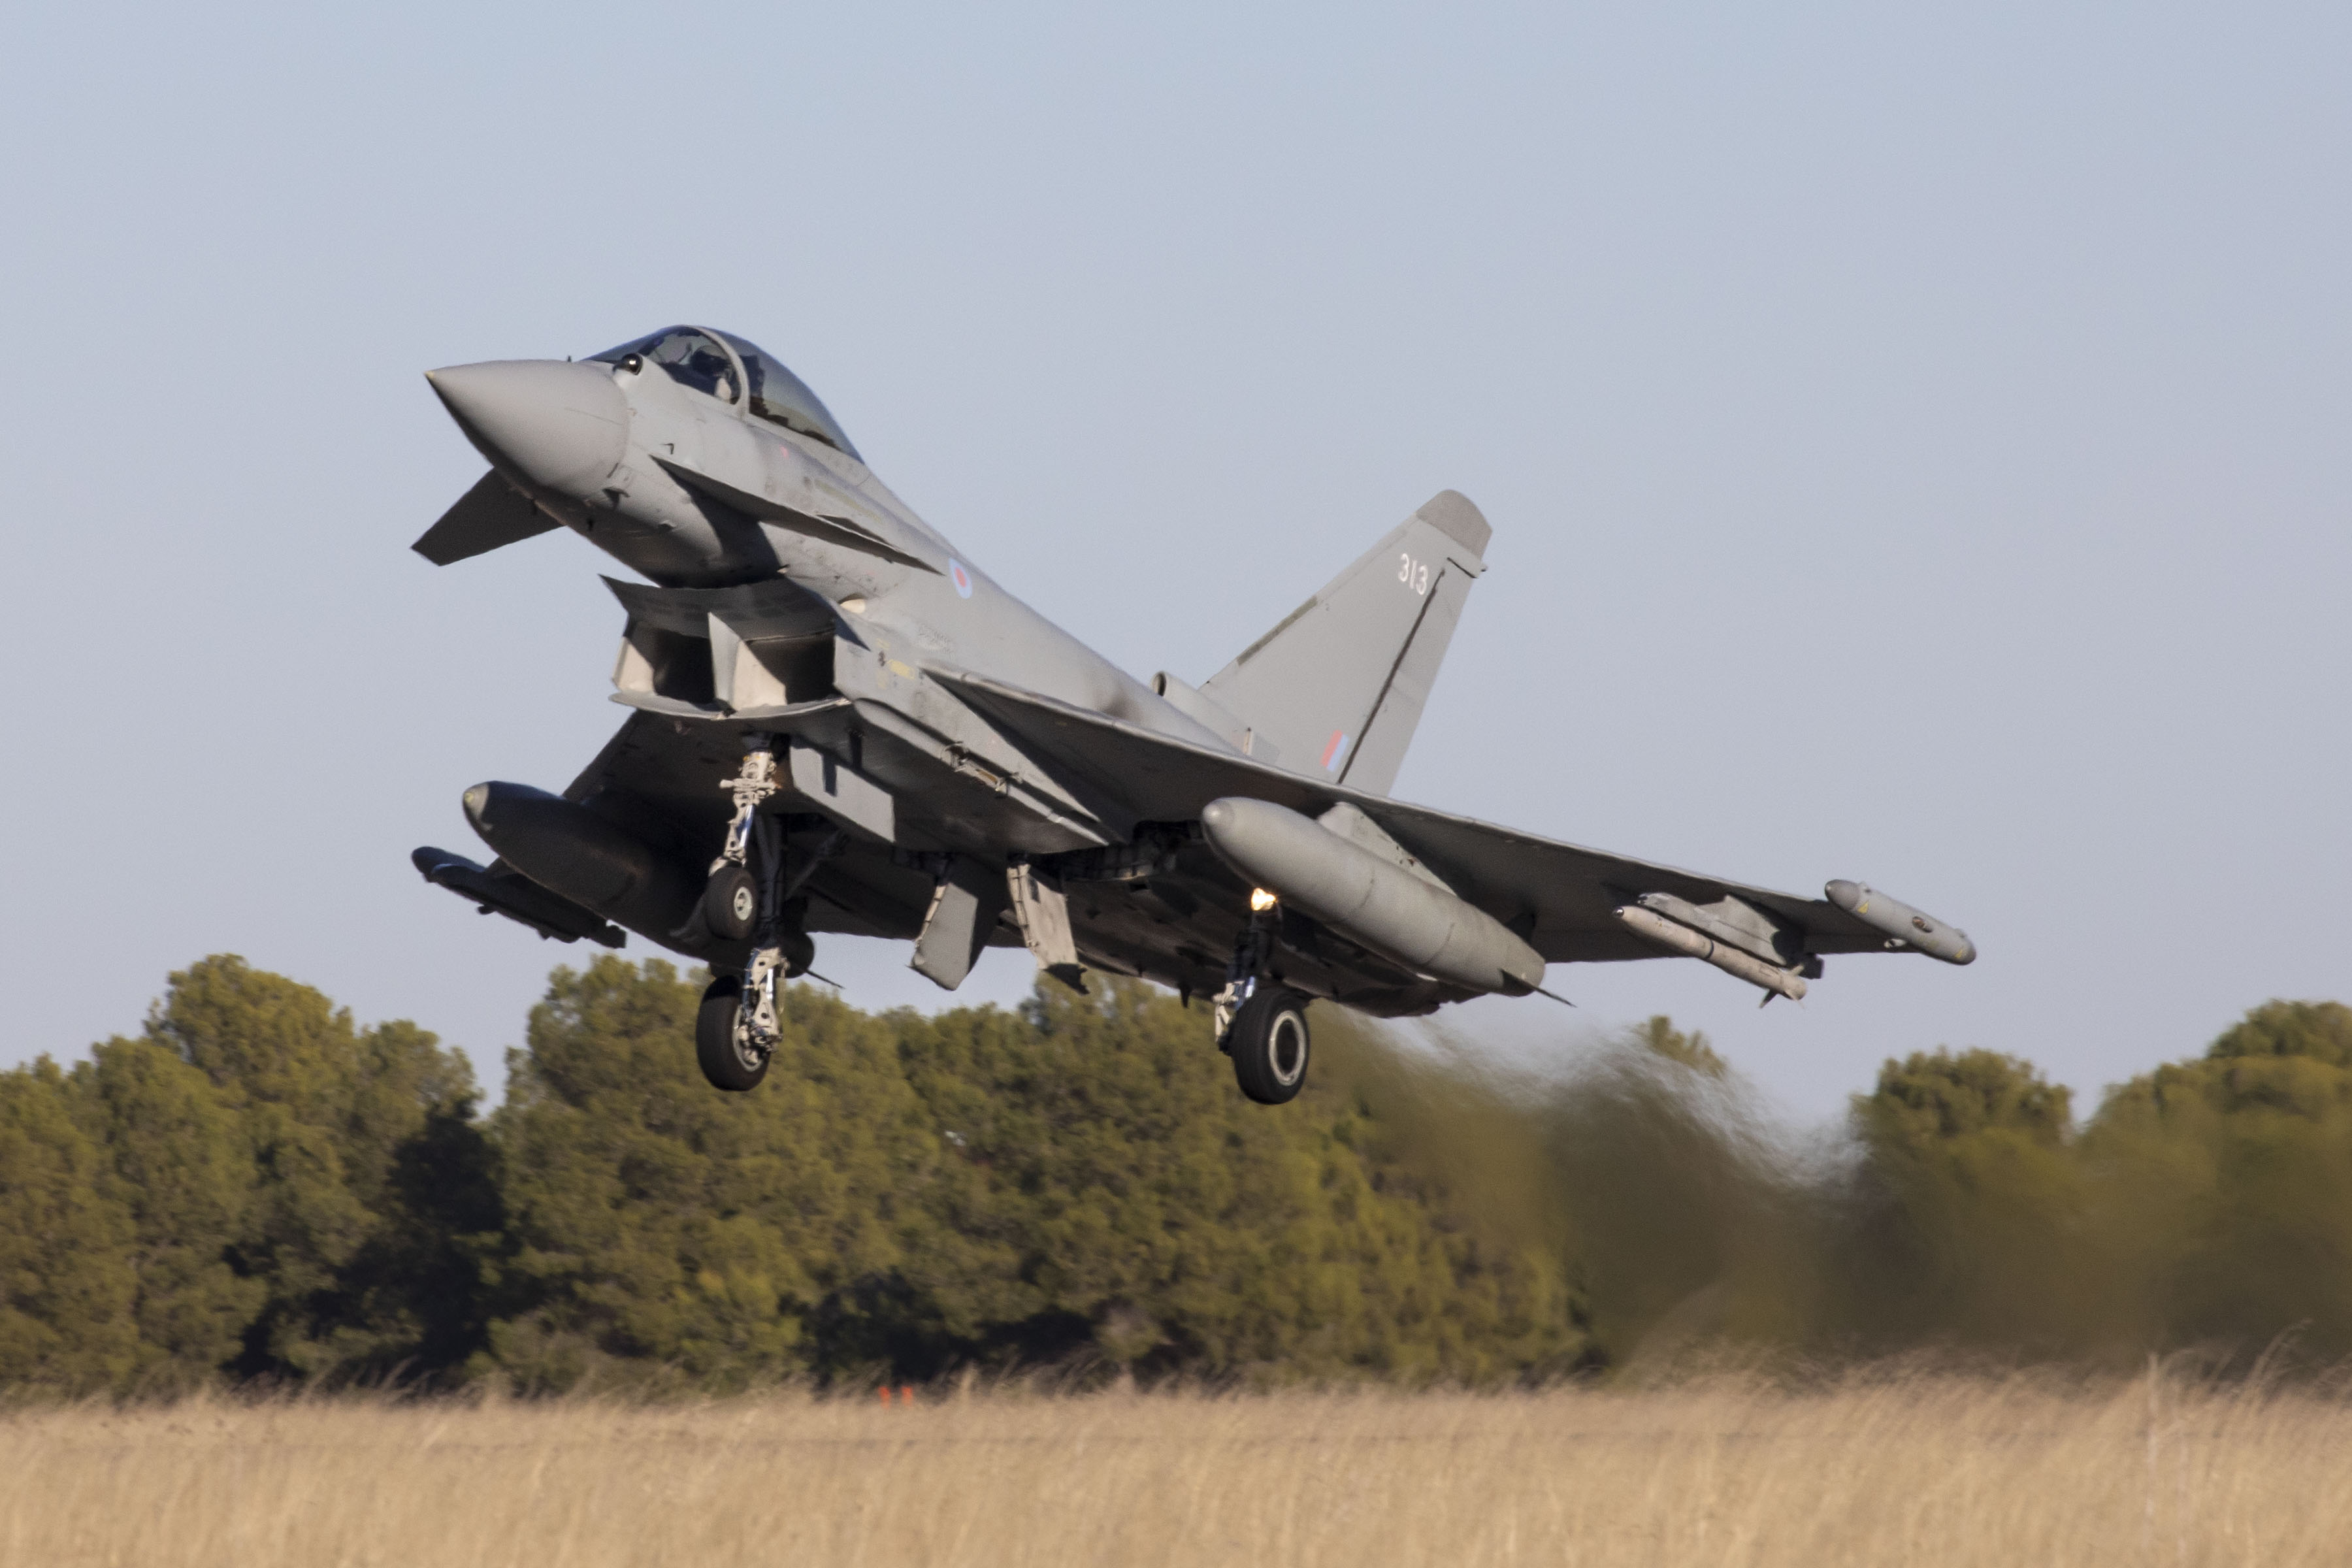 RAF Typhoon landing in Spain